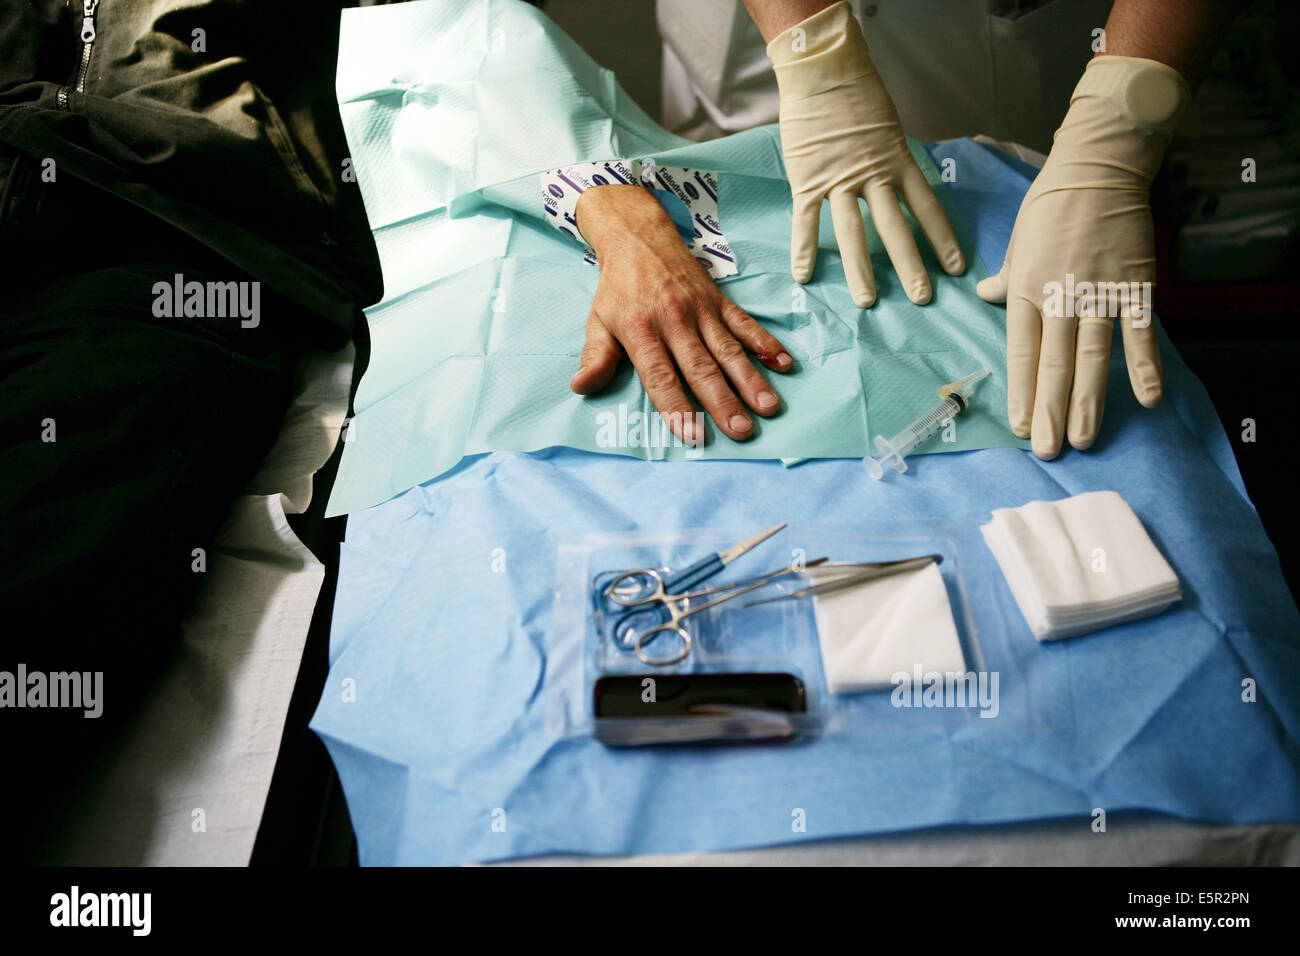 Medico cucitura fino alla mano di un paziente, dipartimento di emergenza, OSPEDALE Lariboisière, Parigi, Francia. Foto Stock